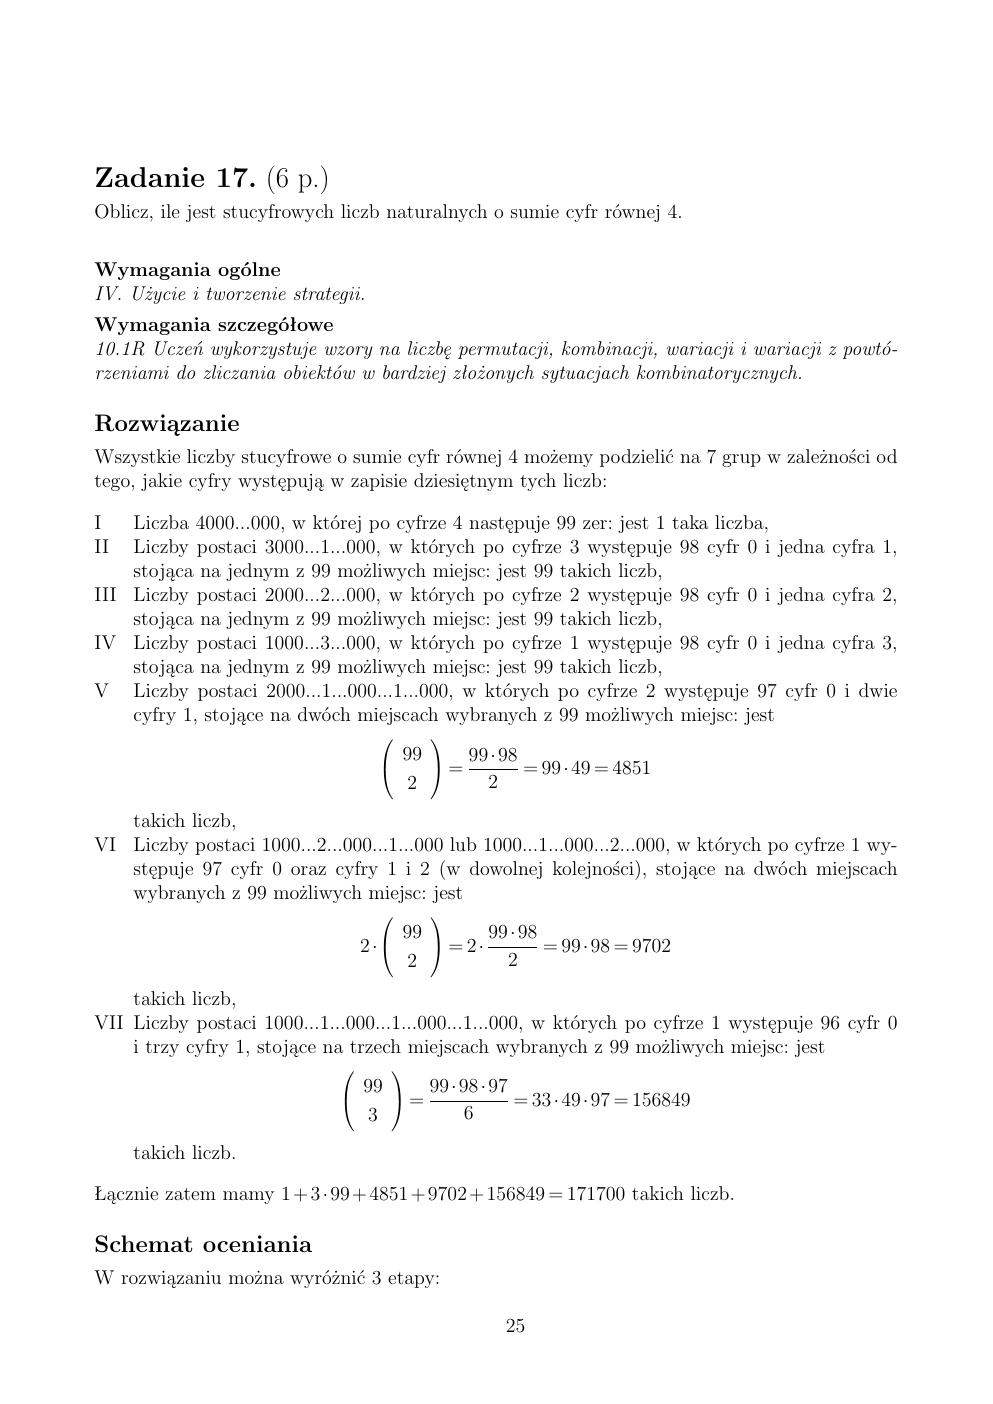 zasady oceniania - odpowiedzi - matematyka rozszerzony - matura 2015 przykładowa-25